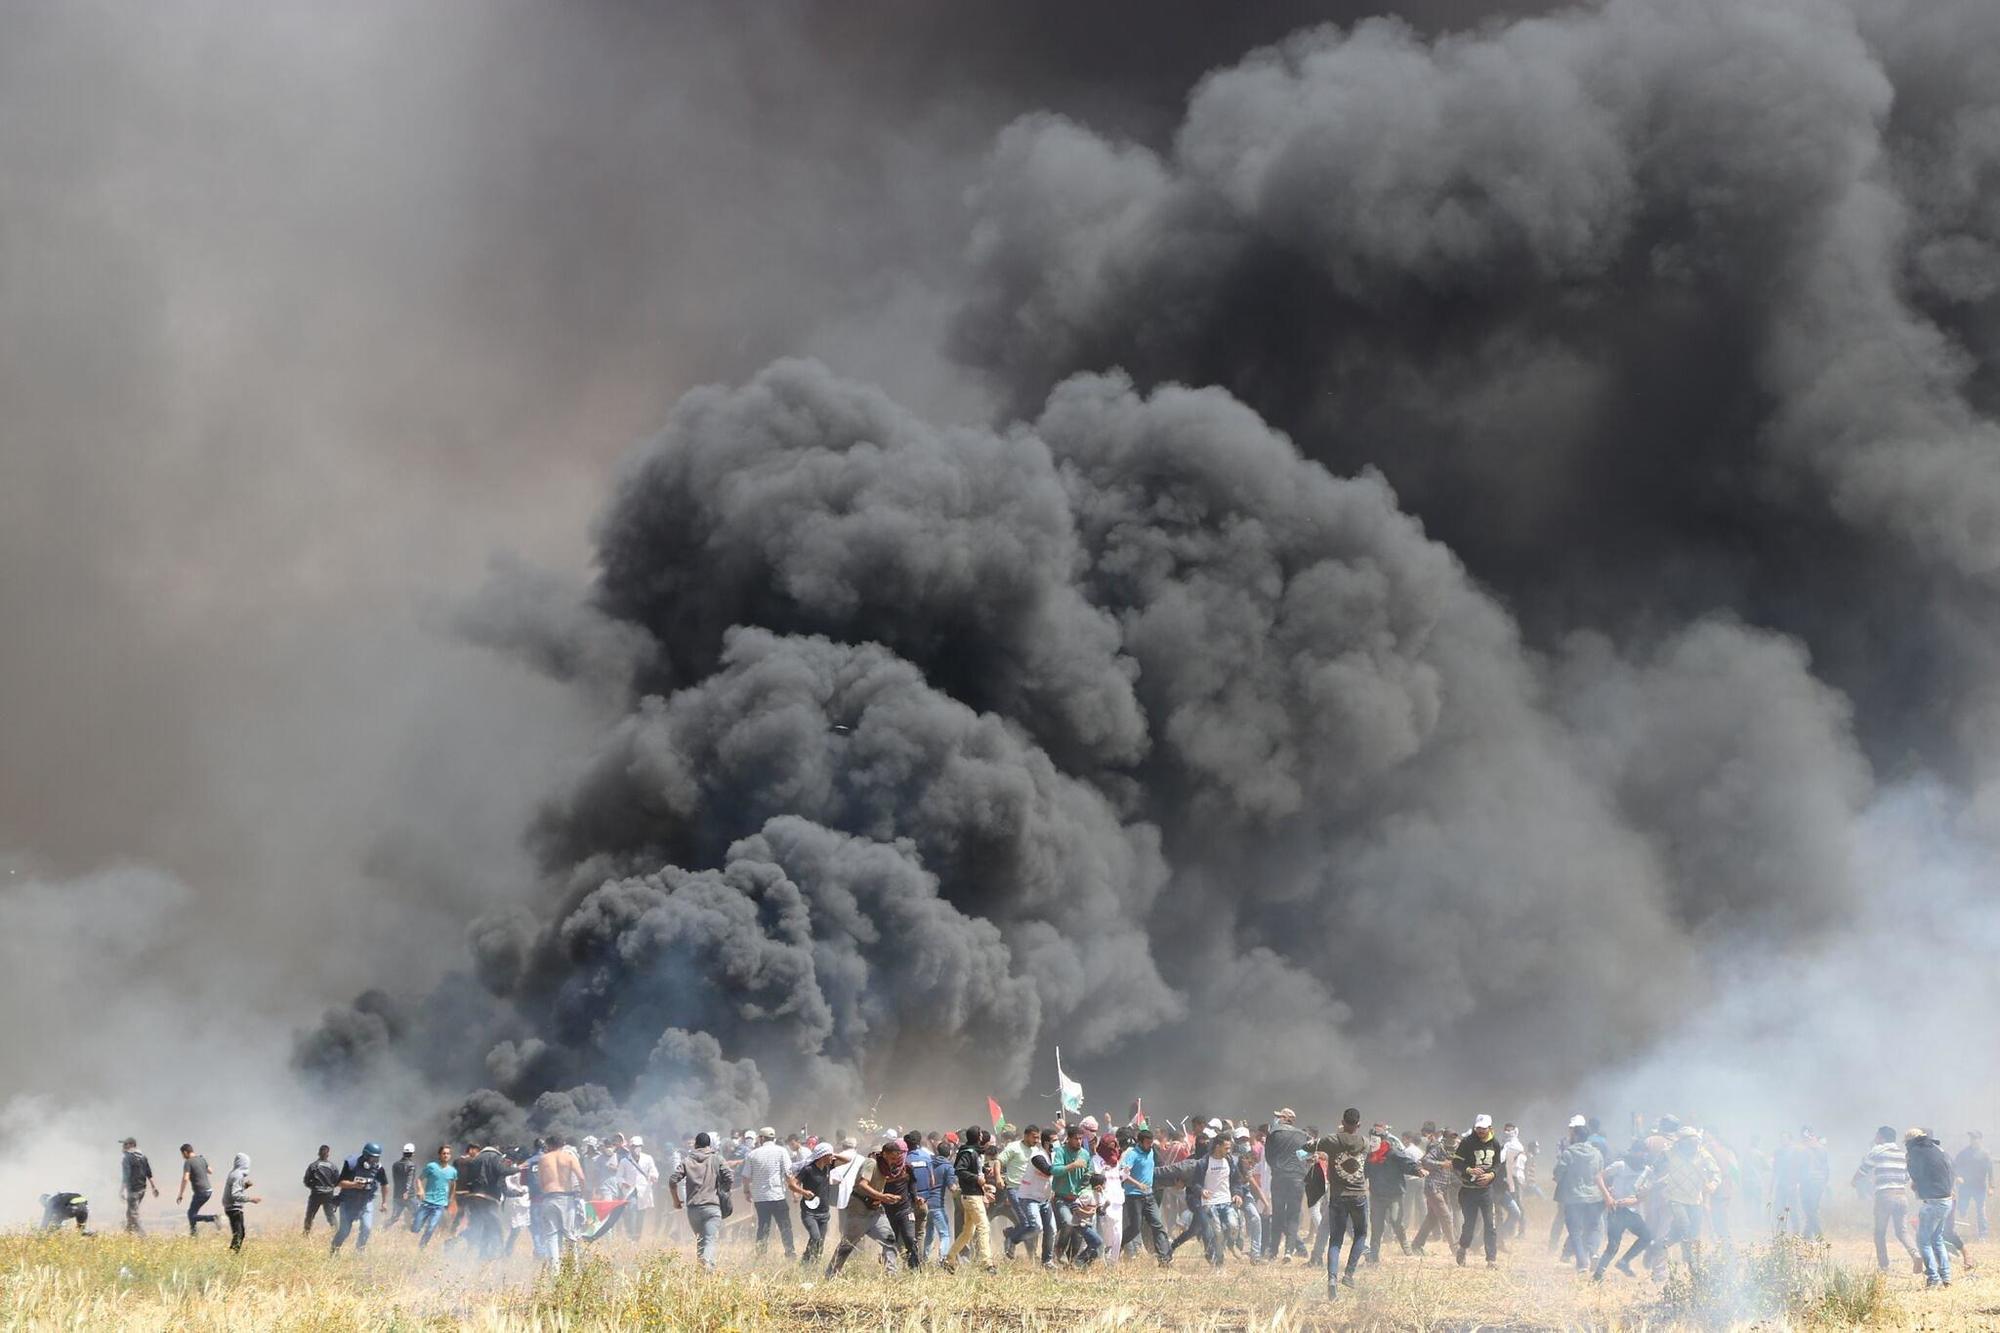 Protestas en Gaza